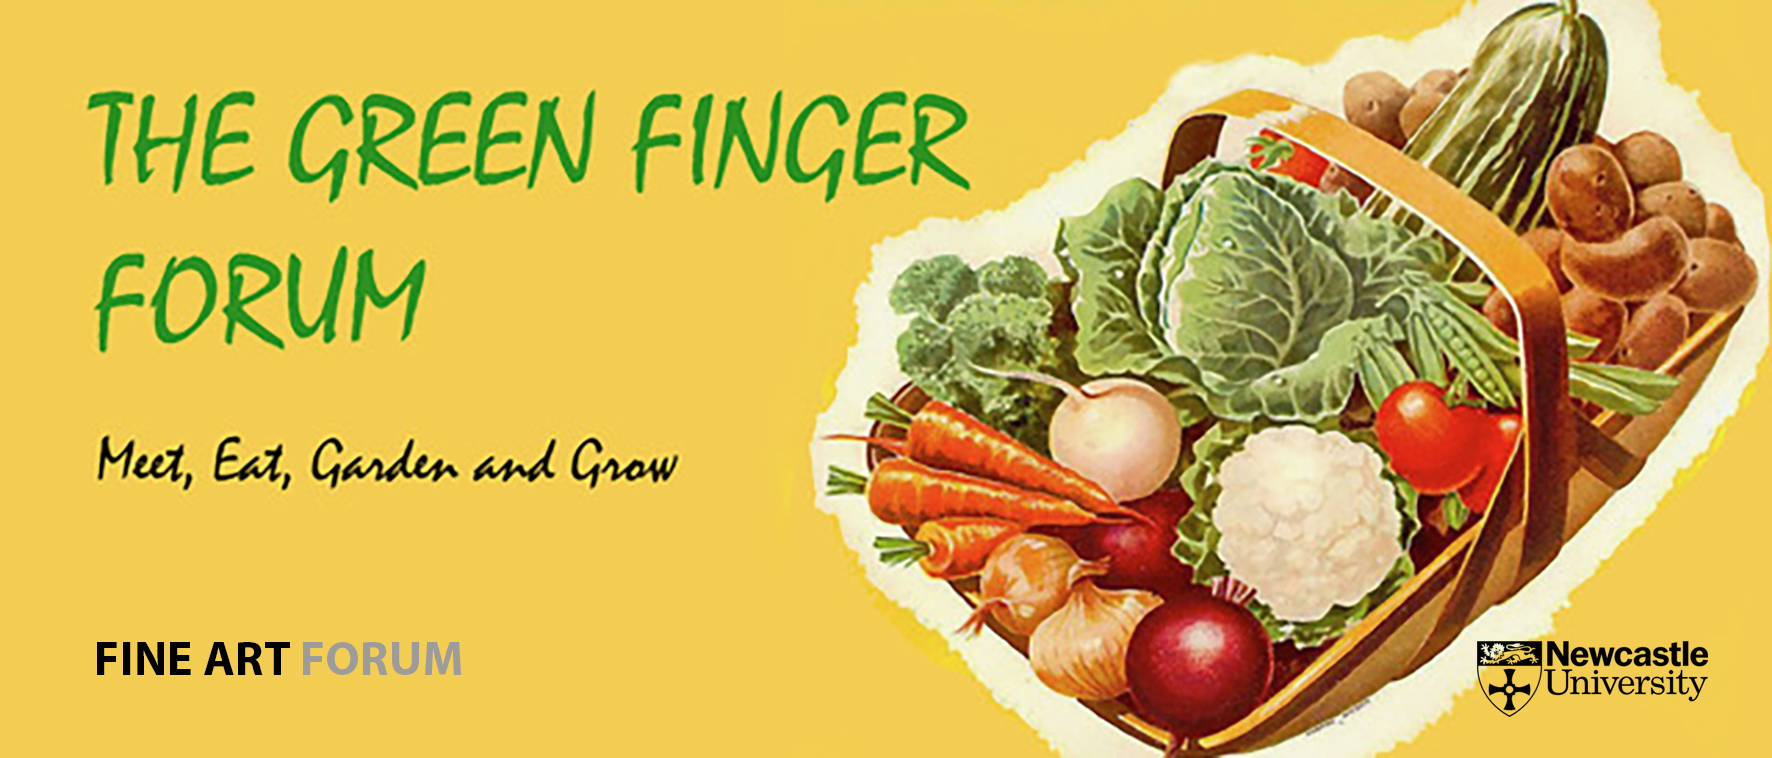 Green Finger Forum